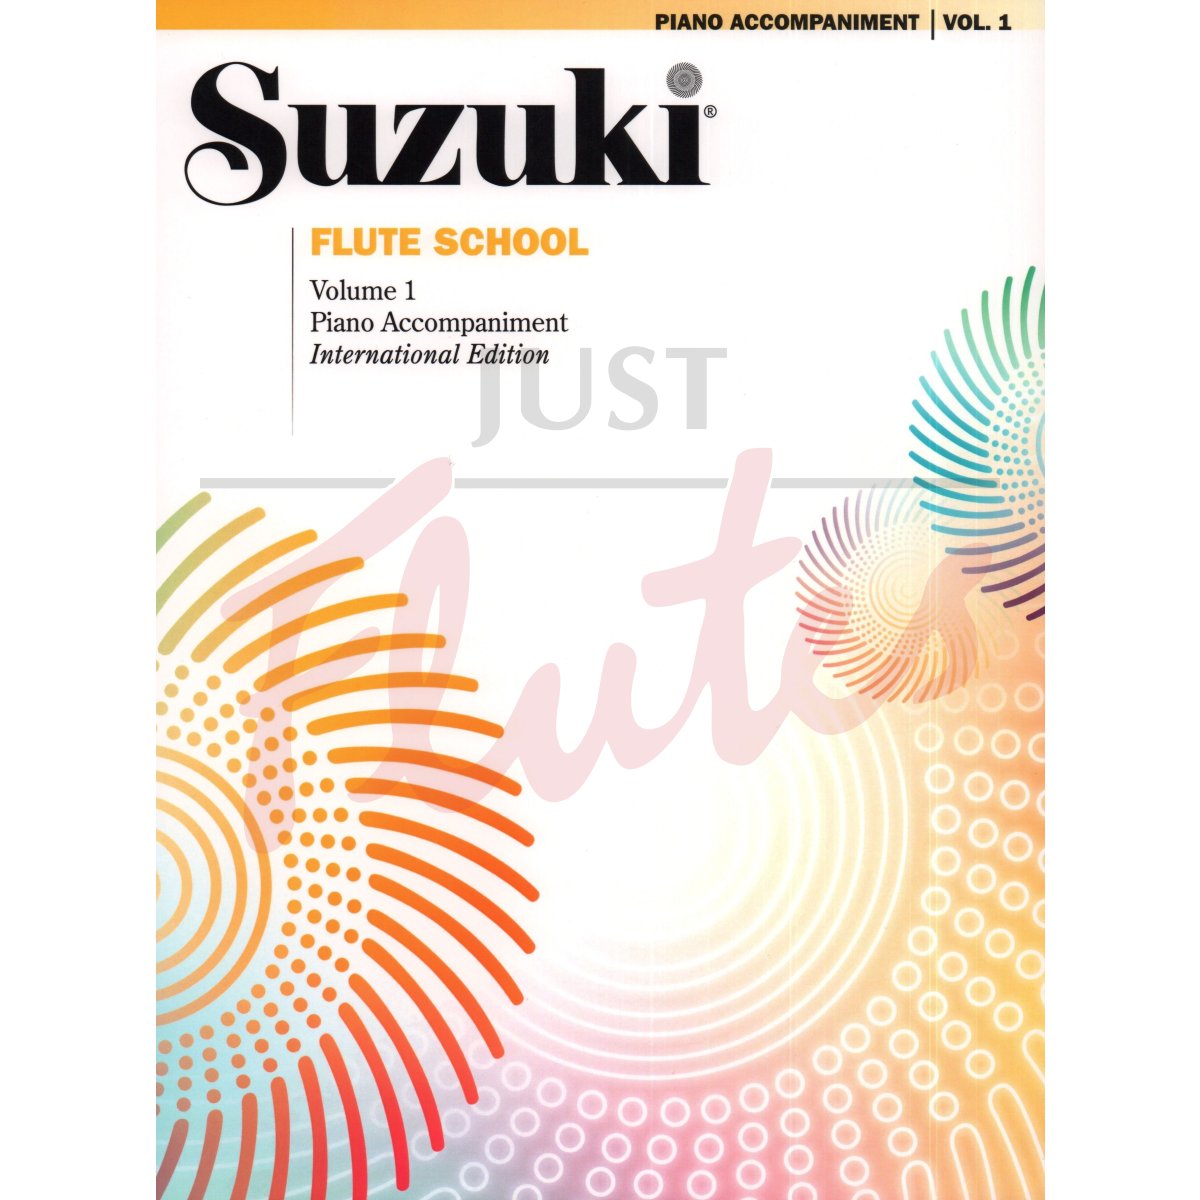 Suzuki Flute School Vol 1 (Revised Edition) [Piano Accompaniment]